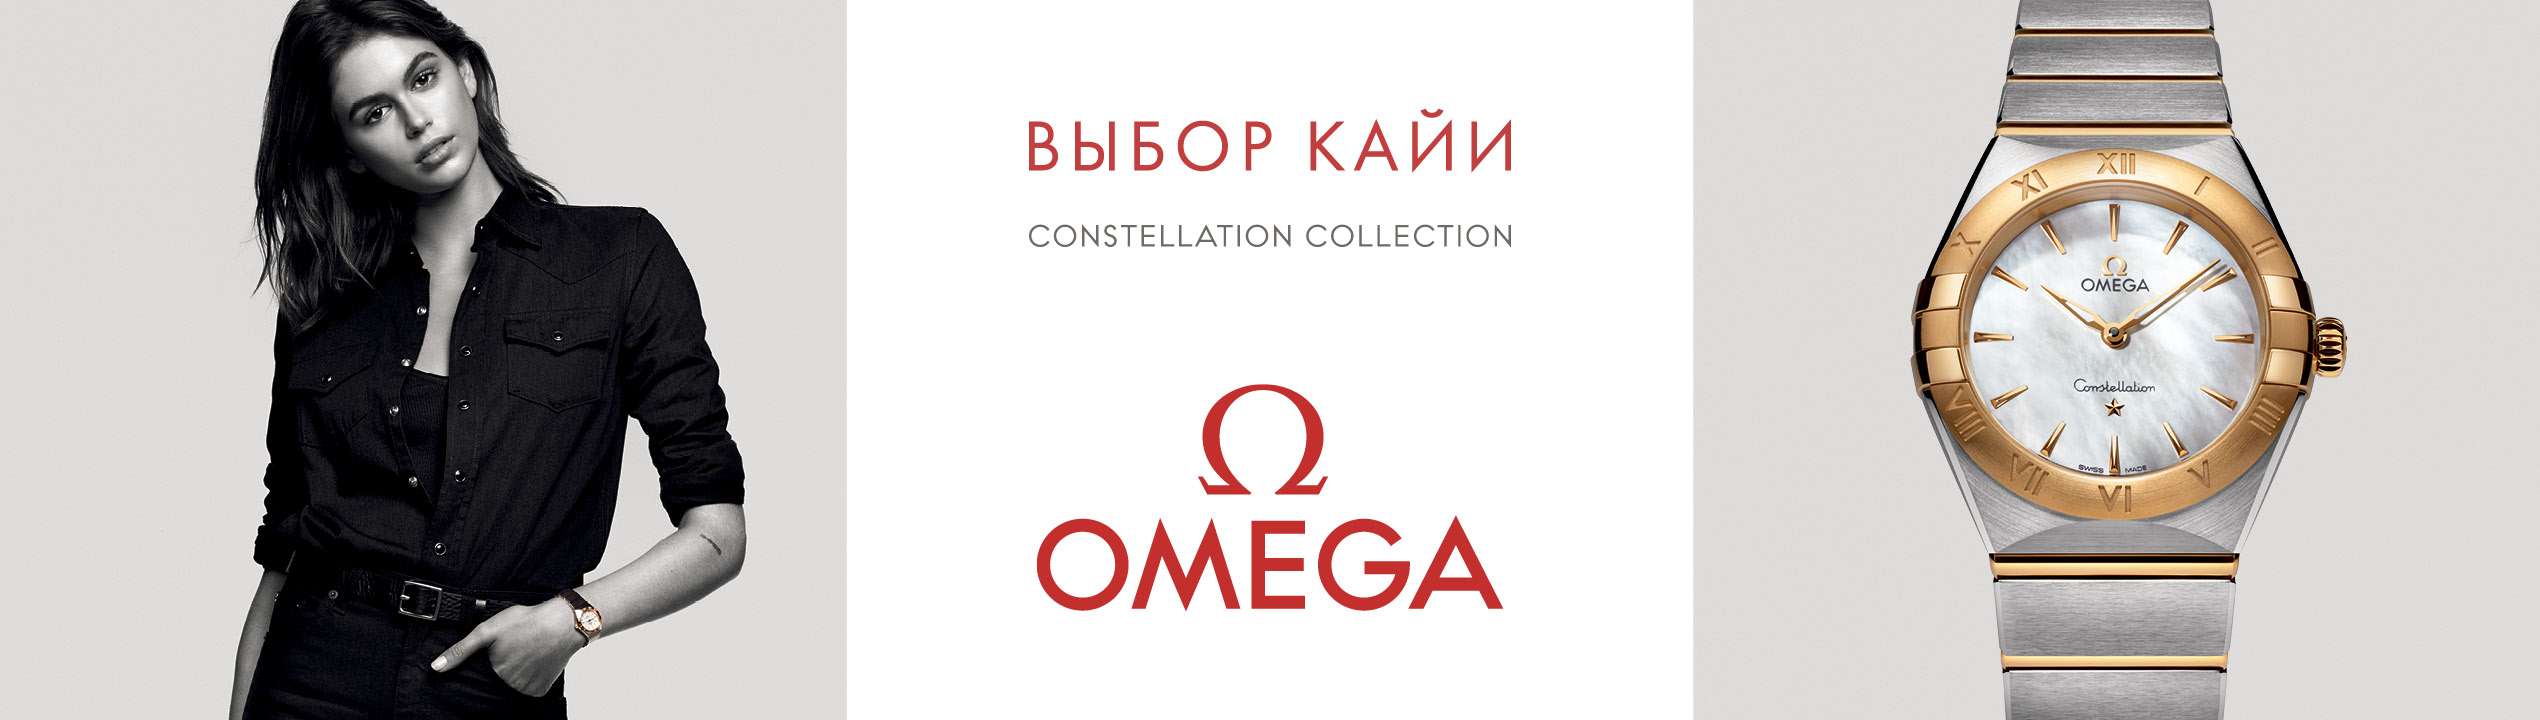 Omega3002